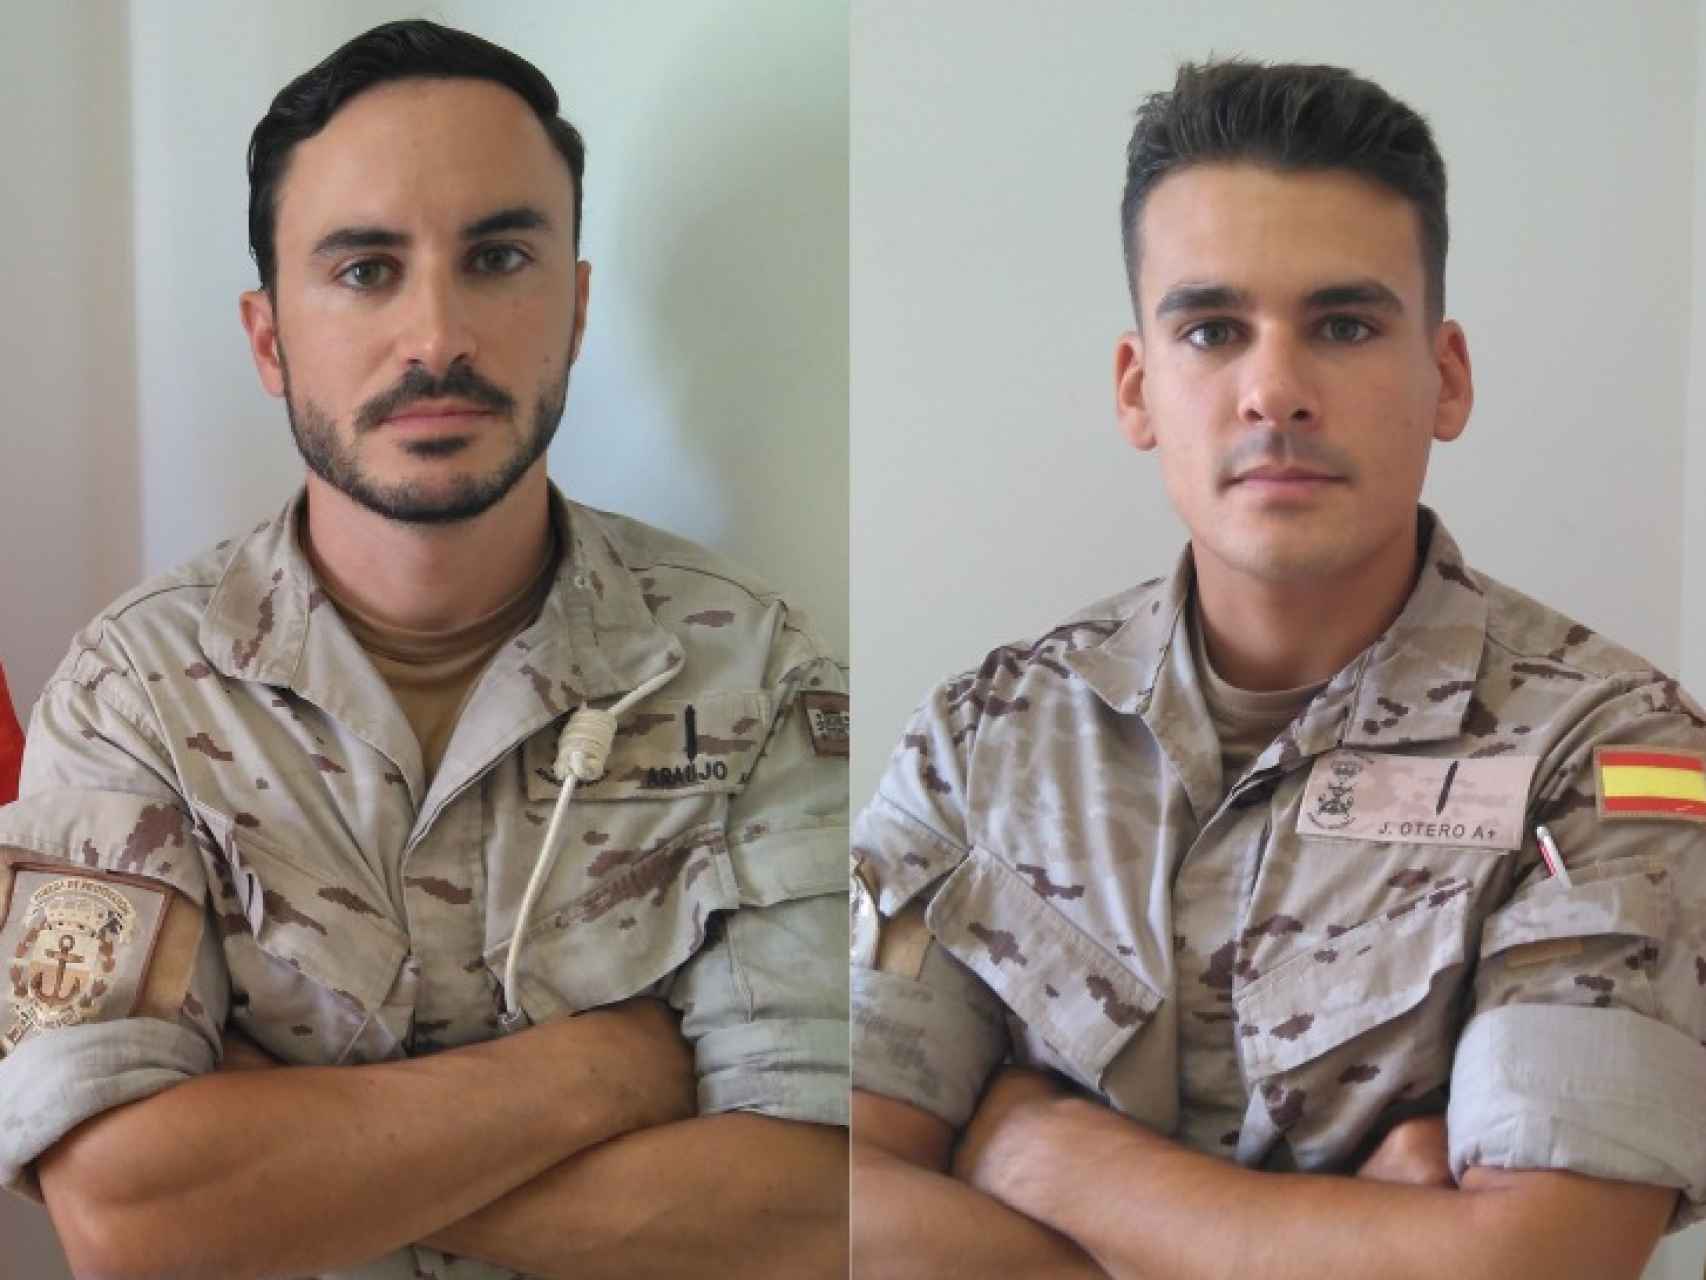 Araujo y Otero, los dos efectivos de la Armada entrevistados por EL ESPAÑOL.